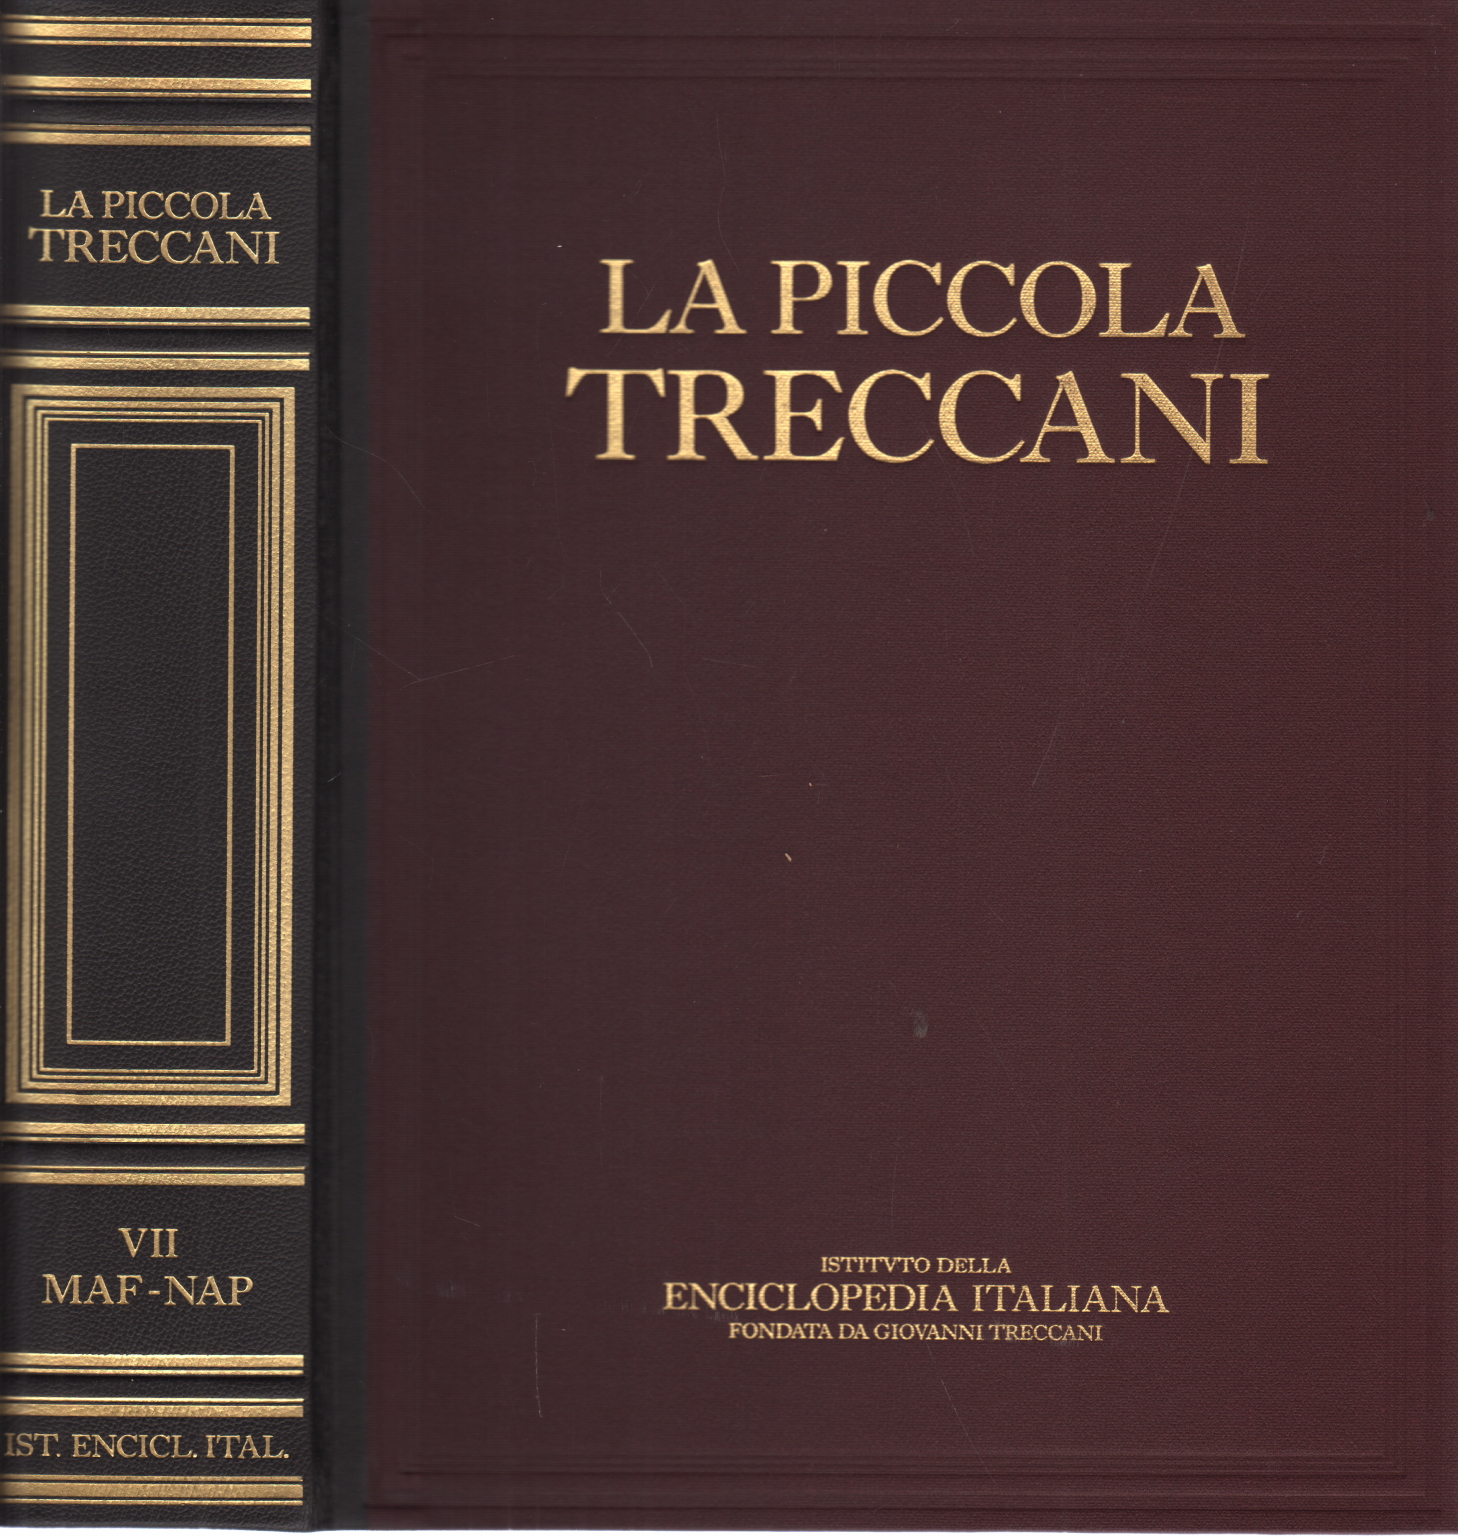 Der kleine Maf-Nap von Treccani VII